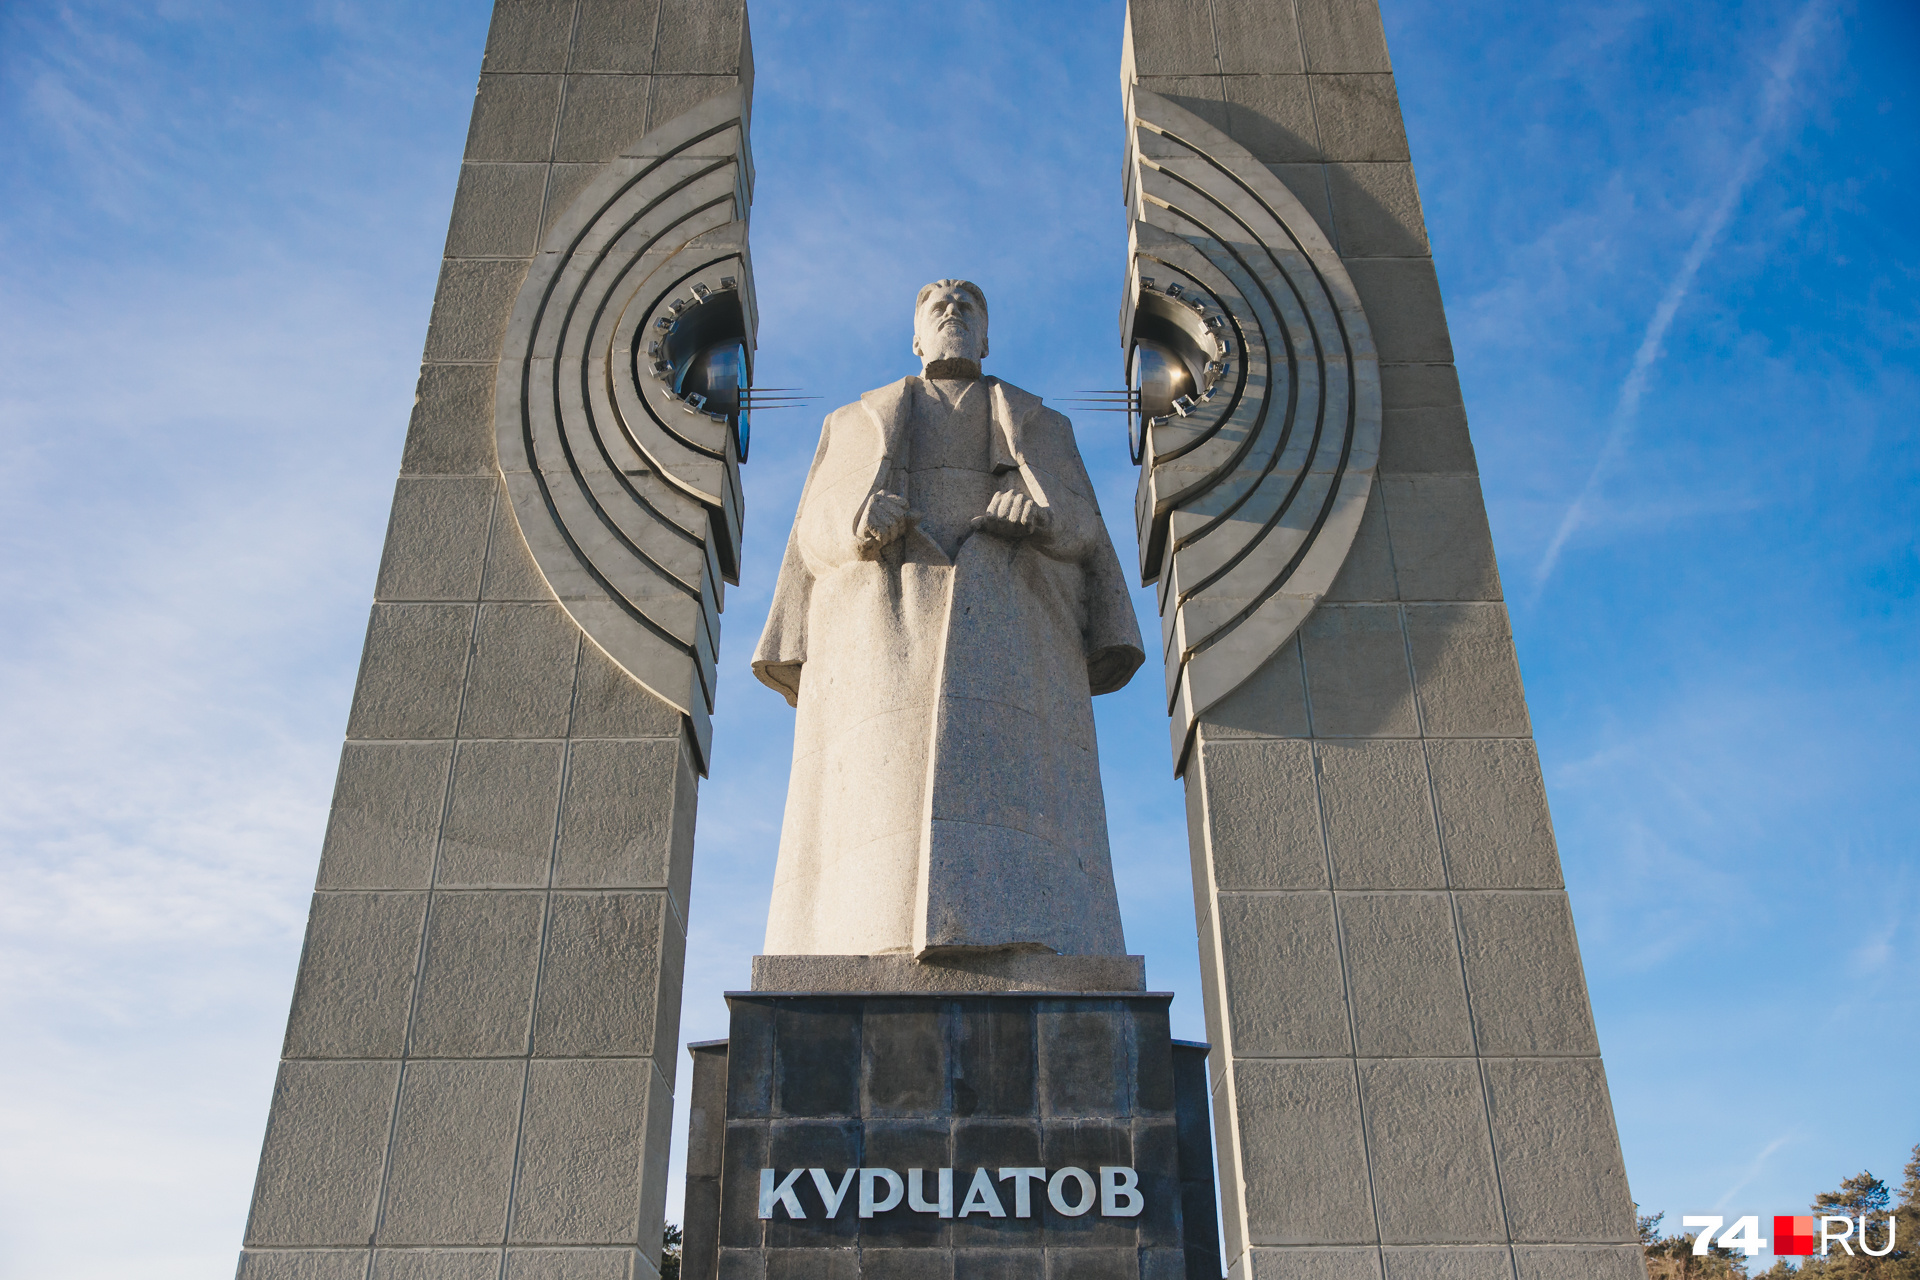 Сегодня памятник Курчатову — излюбленное местом встречи студентов, пар, поклонников футбола и экстремальных видов спорта